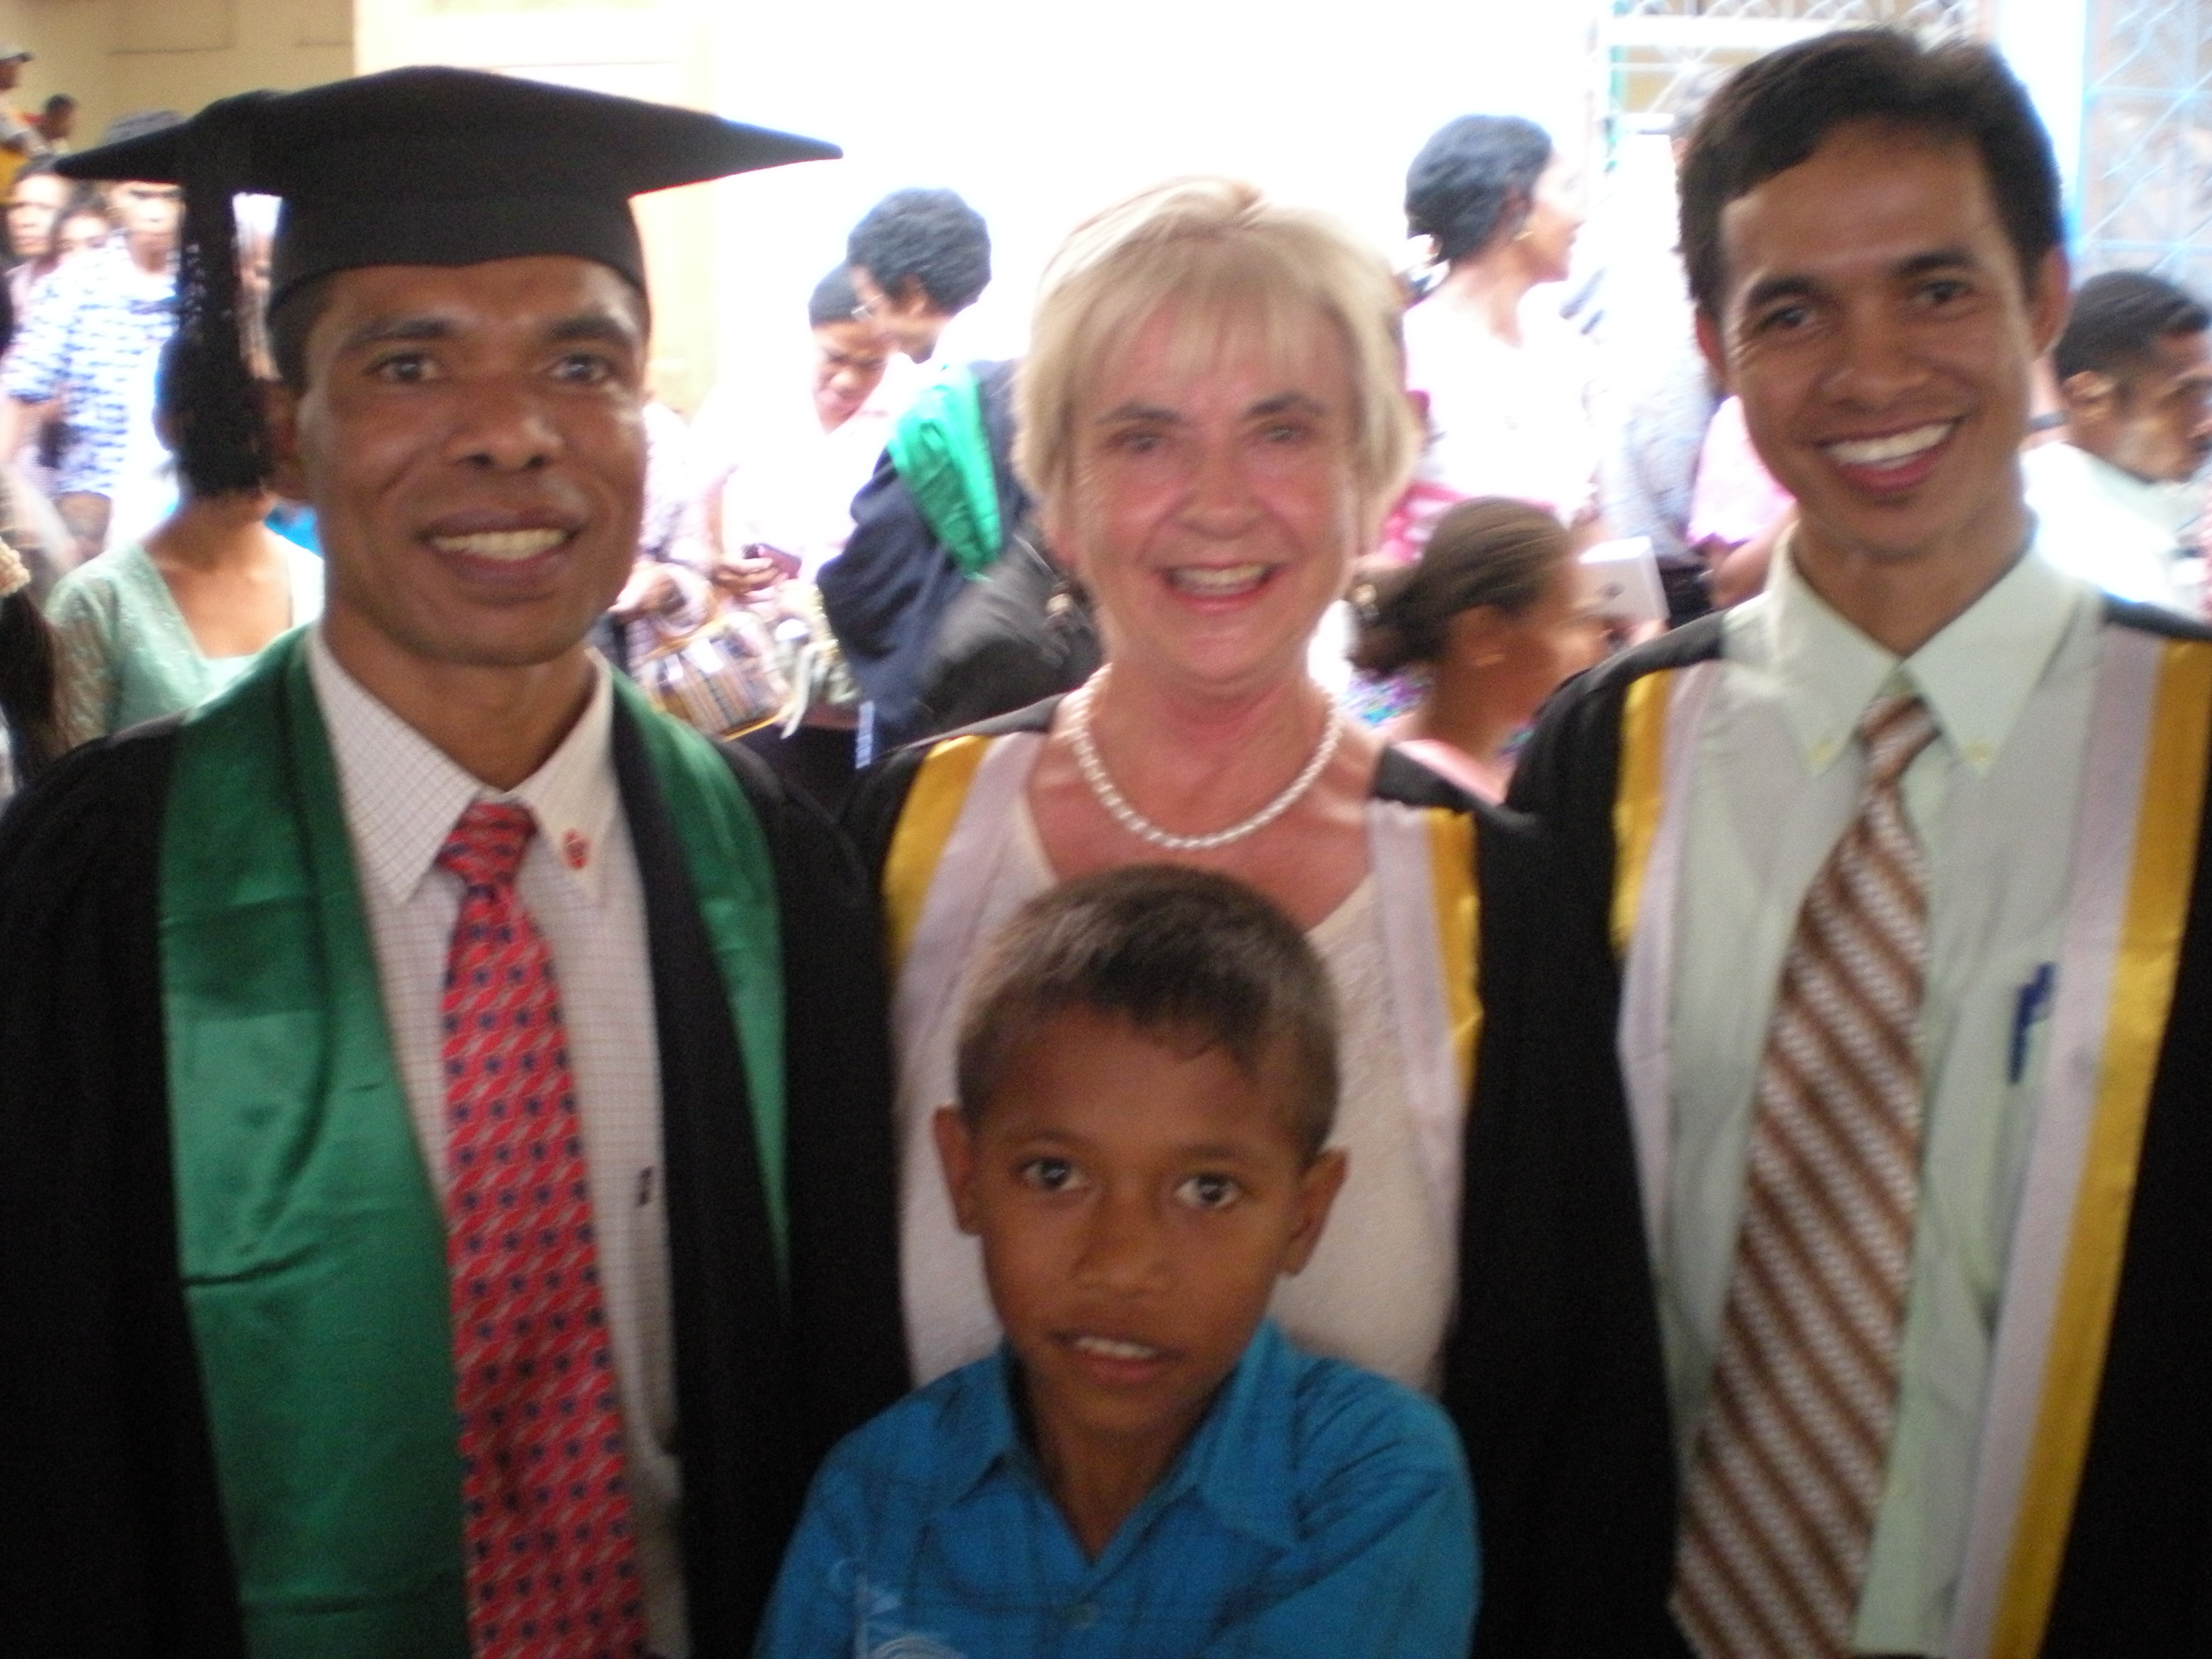 Pedro, Monica, Mariano and Adison (front) at a graduation at CTC Baucau